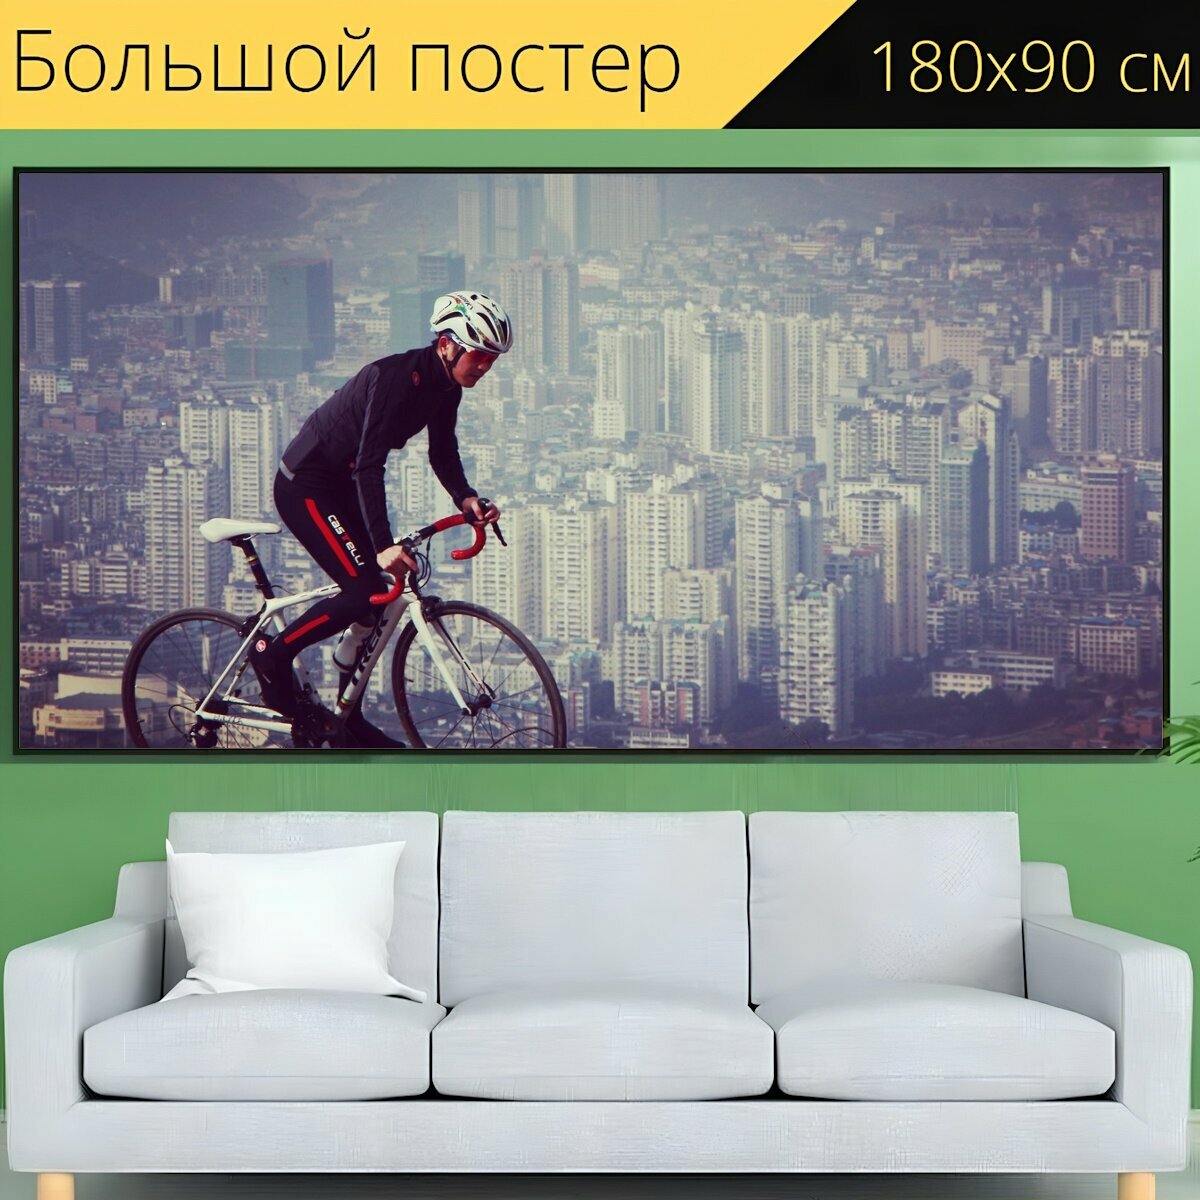 Большой постер "Кататься на велосипеде, сити, велосипед" 180 x 90 см. для интерьера